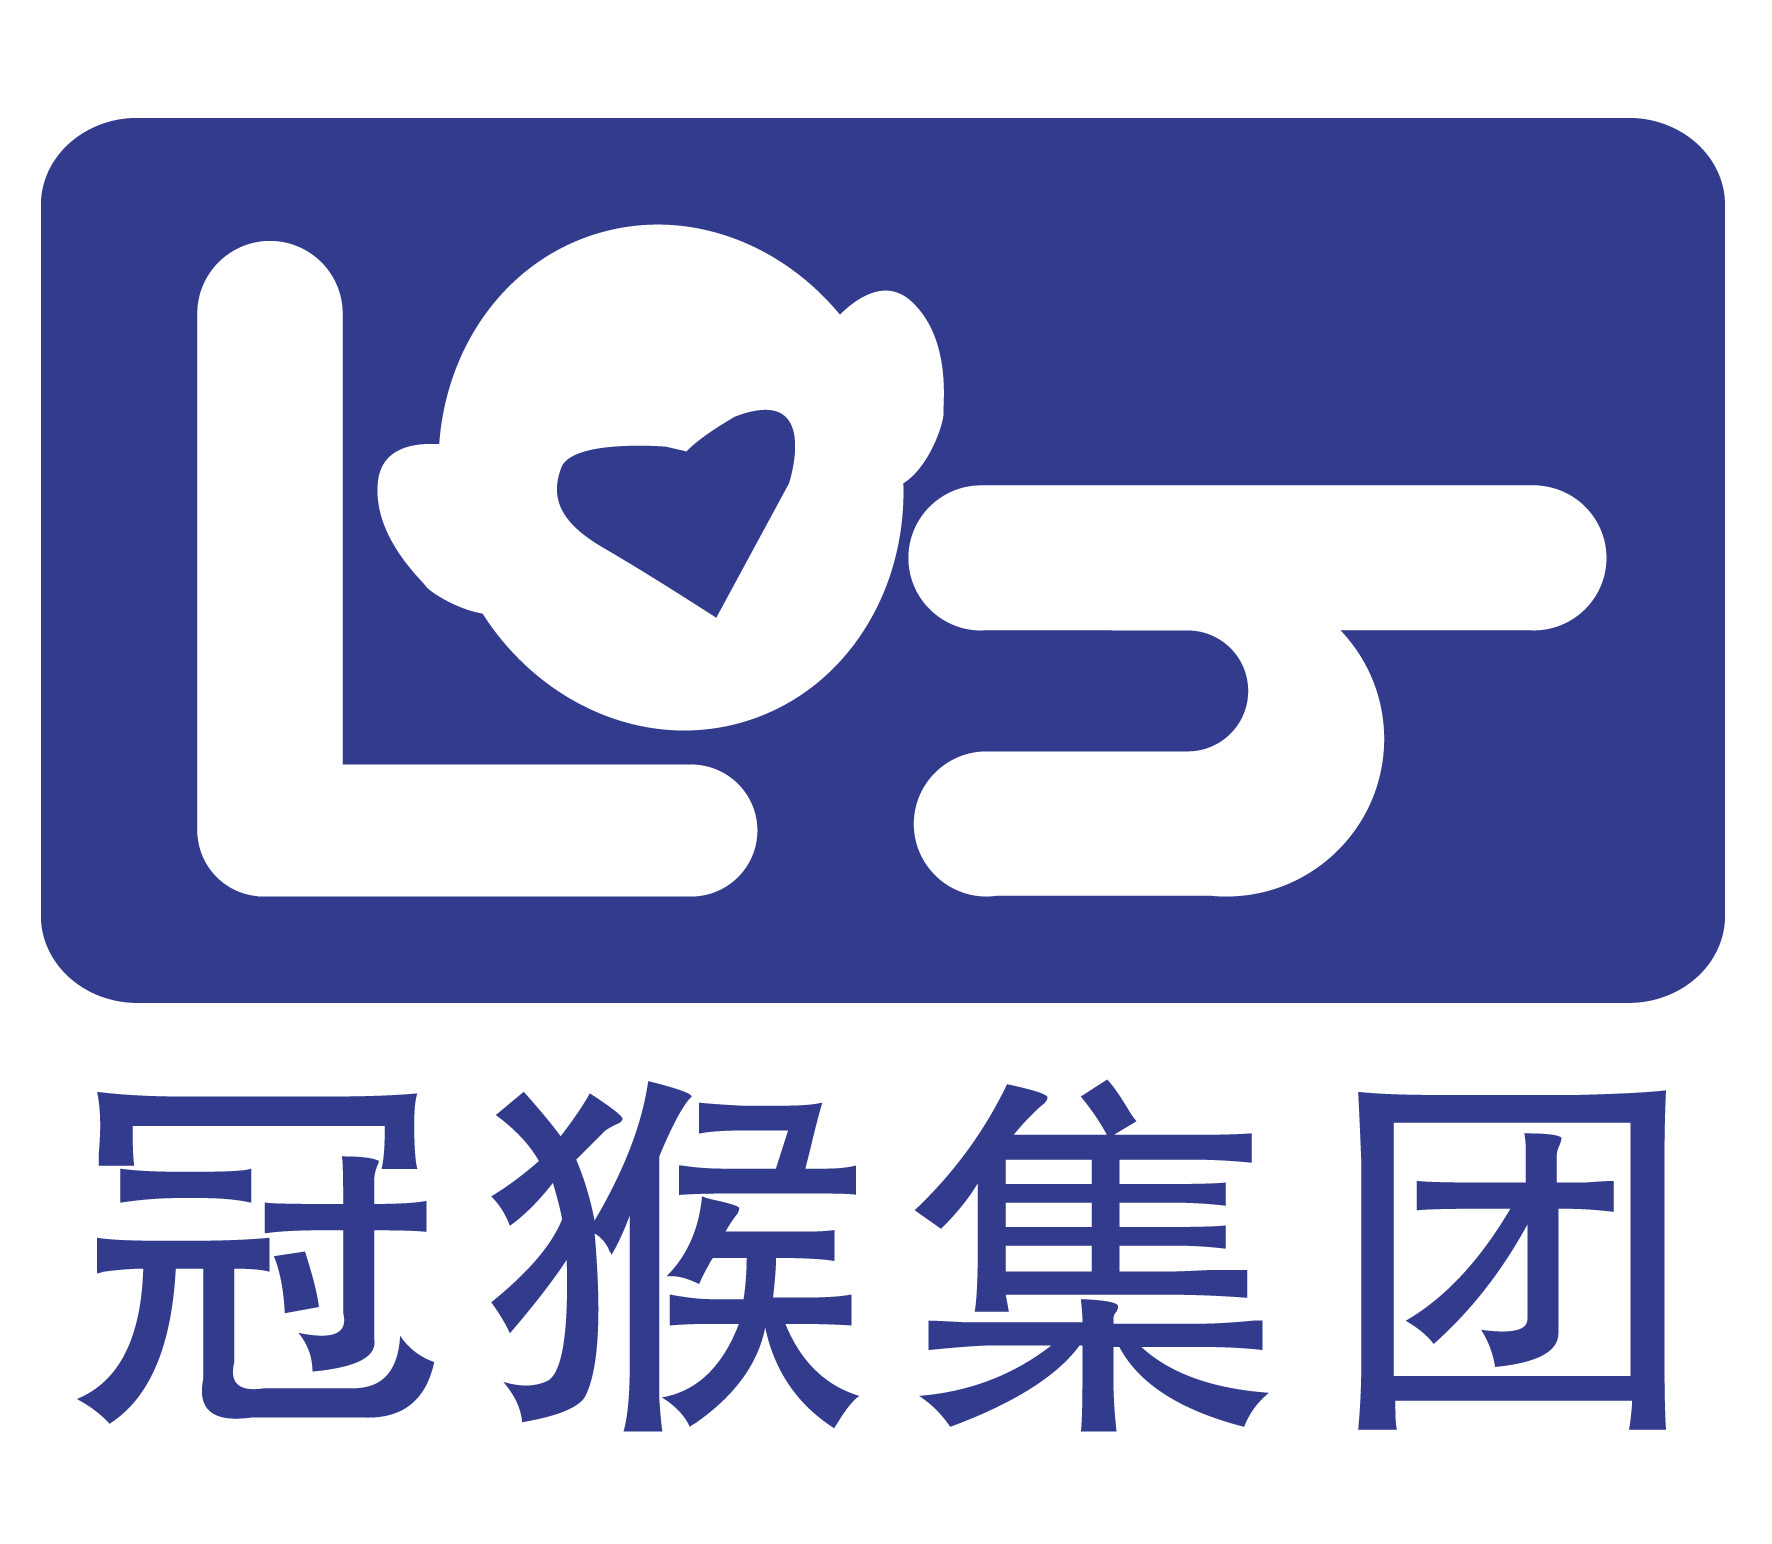 上海冠猴输送设备有限公司